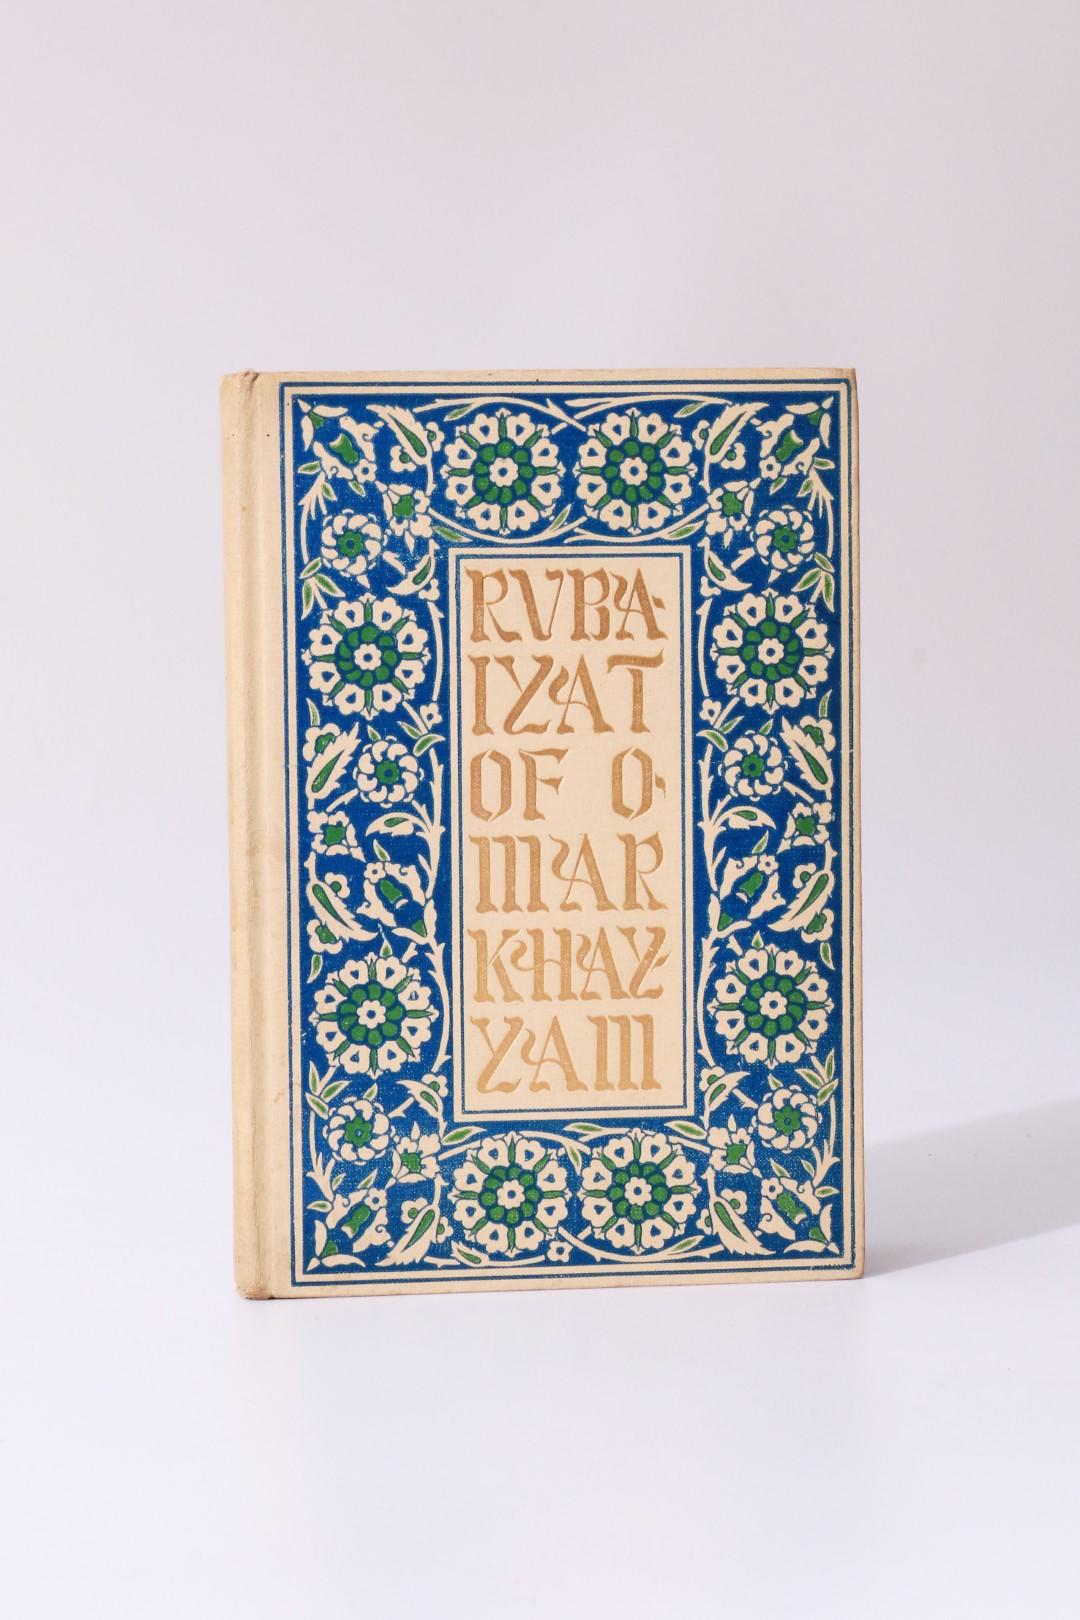 Edward Fitzgerald - Rubaiyat of Omar Khayyam - Thomas Y. Crowell, n.d. [c1920], Later Edition.